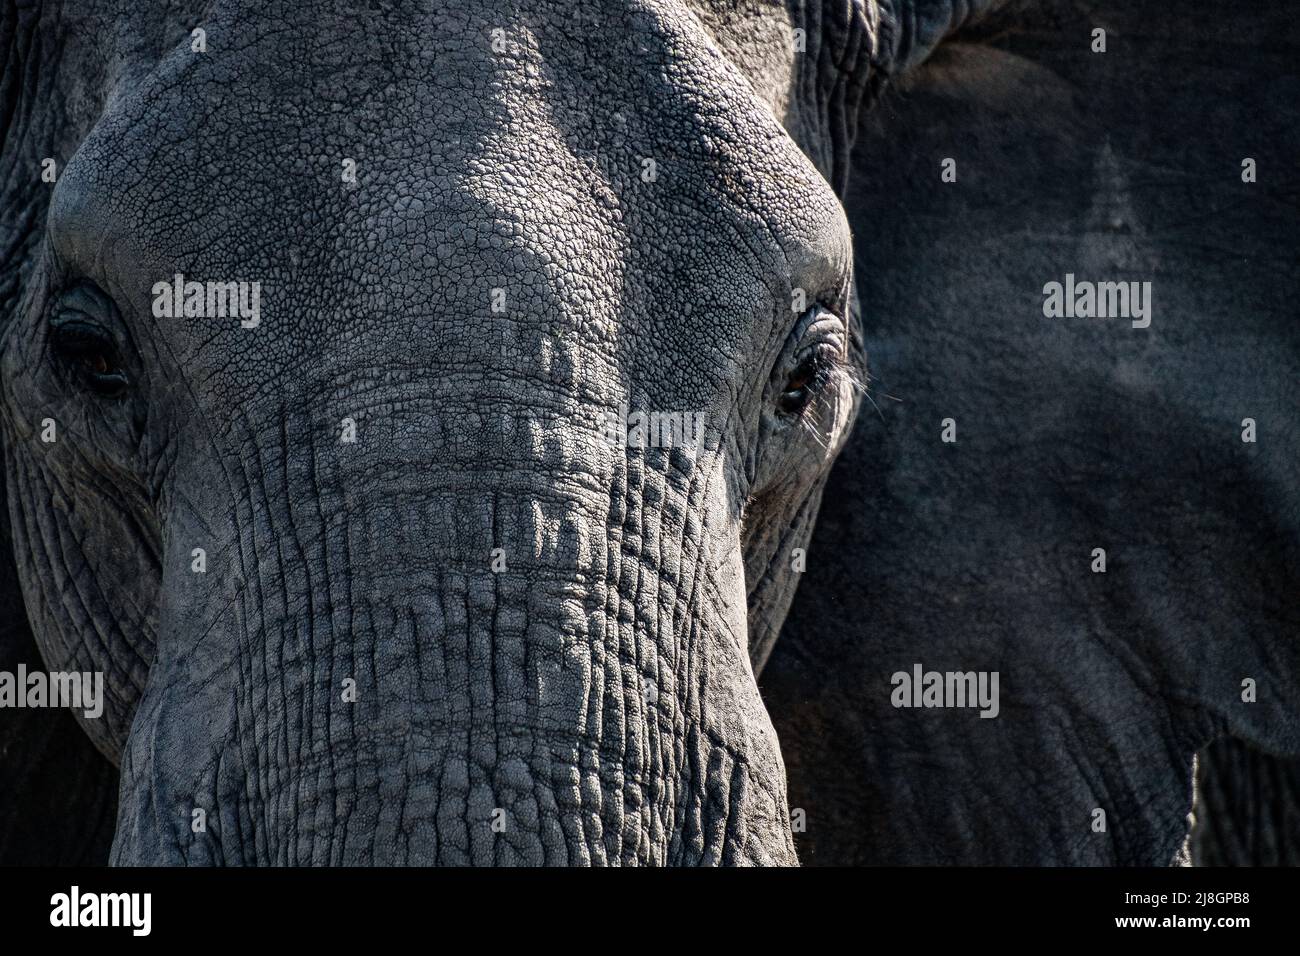 Elephant Close up. Stock Photo